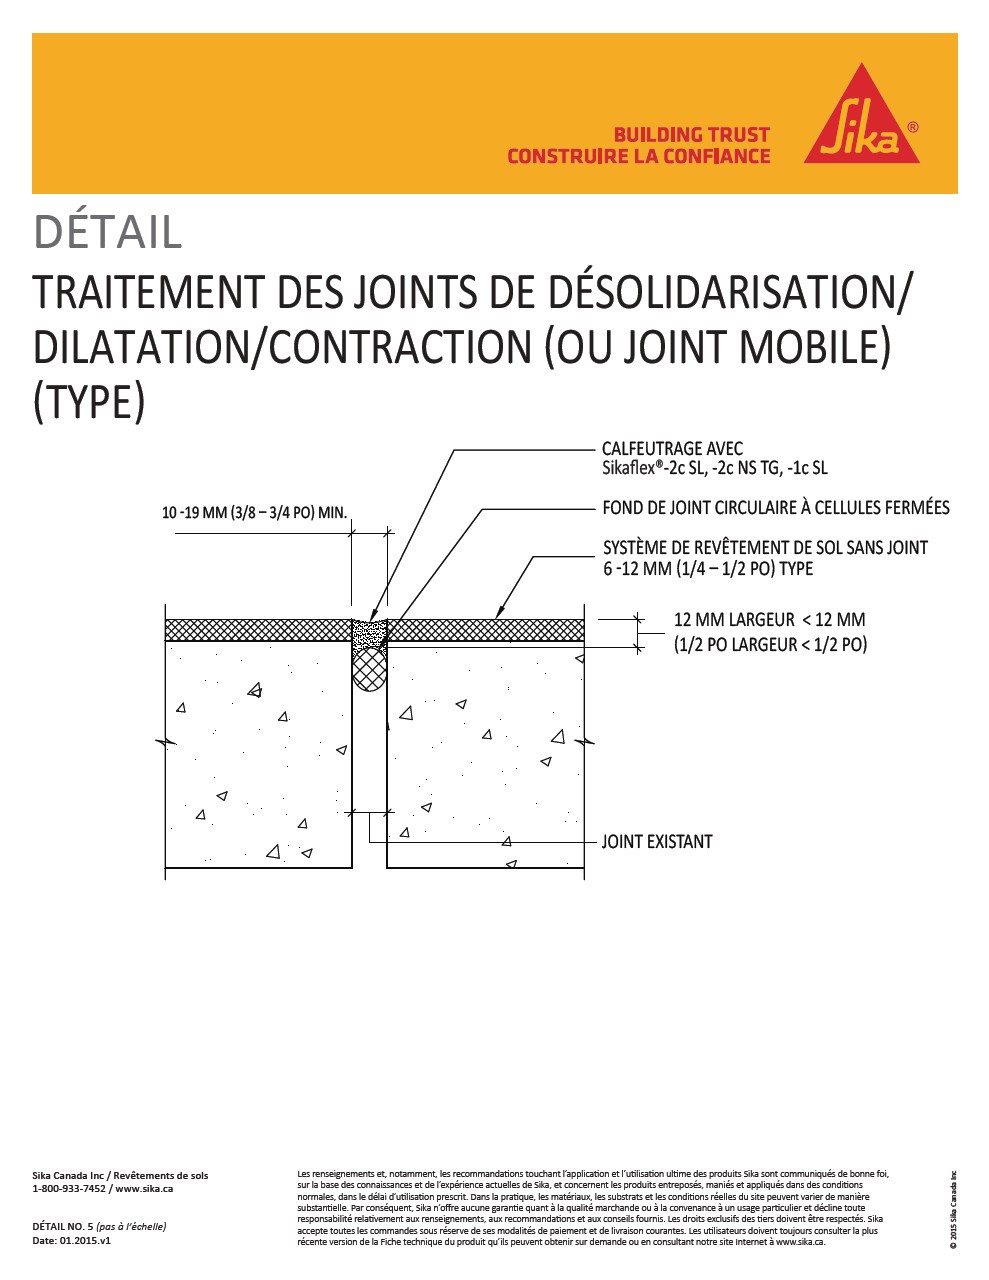 5- Traitement des joints de désolidarisation-dilatation-contraction 